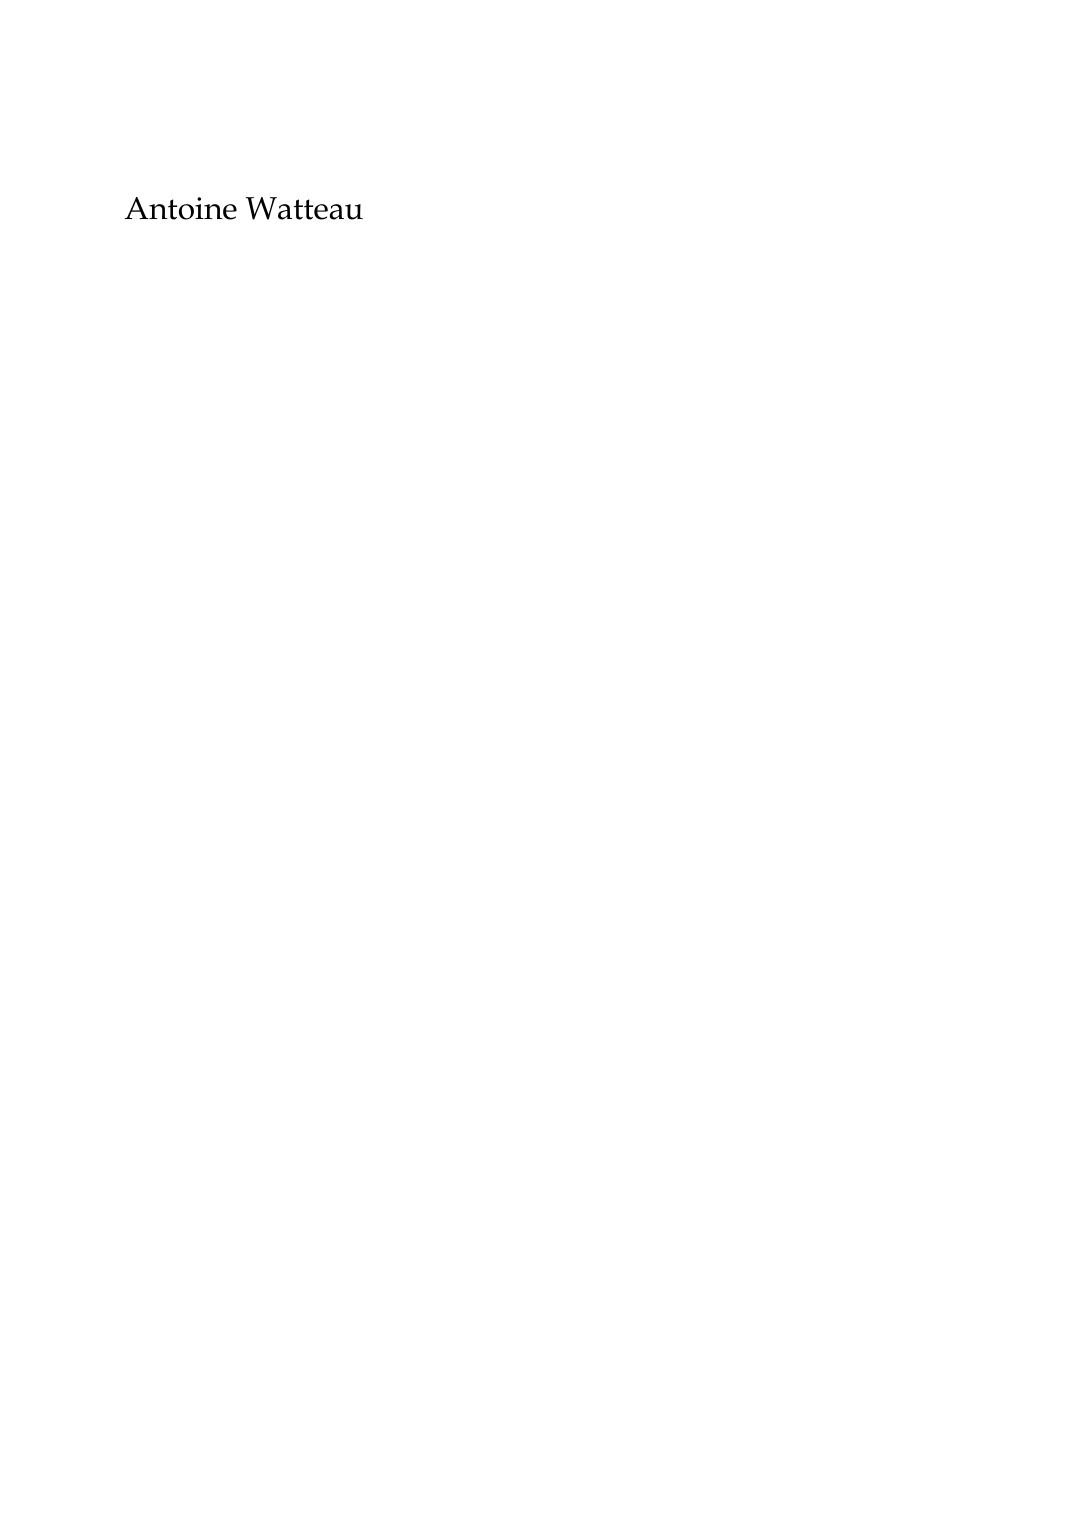 Prévisualisation du document Antoine Watteau par Louis ReauMembre de l'Institut, Paris La renommée de Watteau, le peintre le plus exquis de l'école française duXVIIIe siècle, a passé par des alternatives d'admiration et de décri quijettent un jour curieux sur les variations du goût.